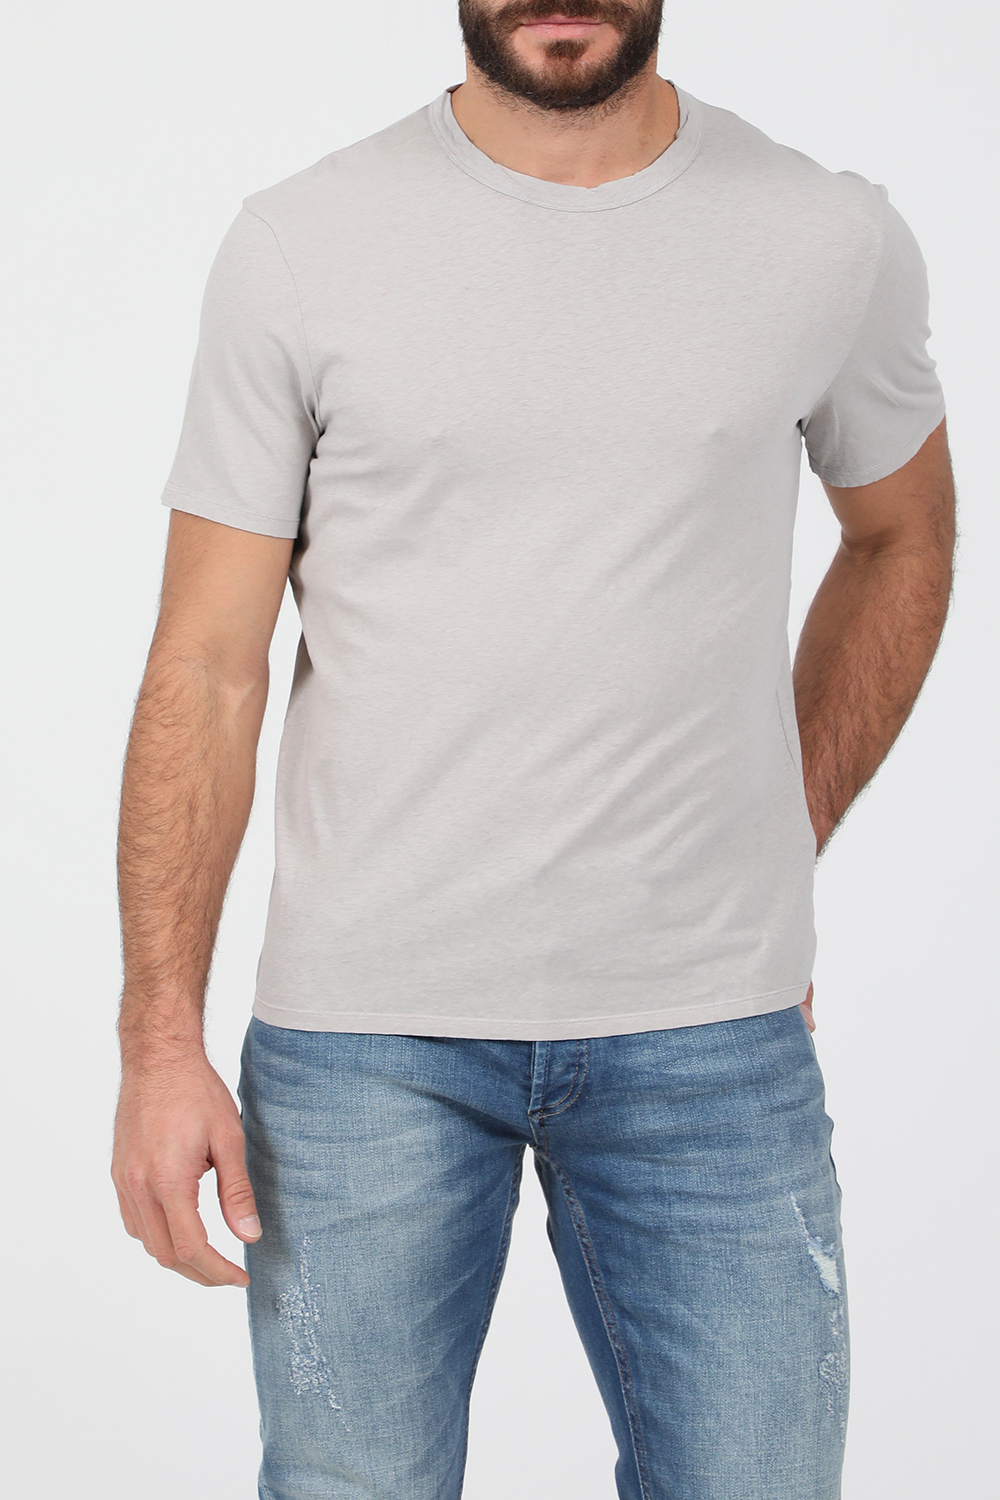 Ανδρικά/Ρούχα/Μπλούζες/Κοντομάνικες AMERICAN VINTAGE - Ανδρικό t-shirt AMERICAN VINTAGE γκρι